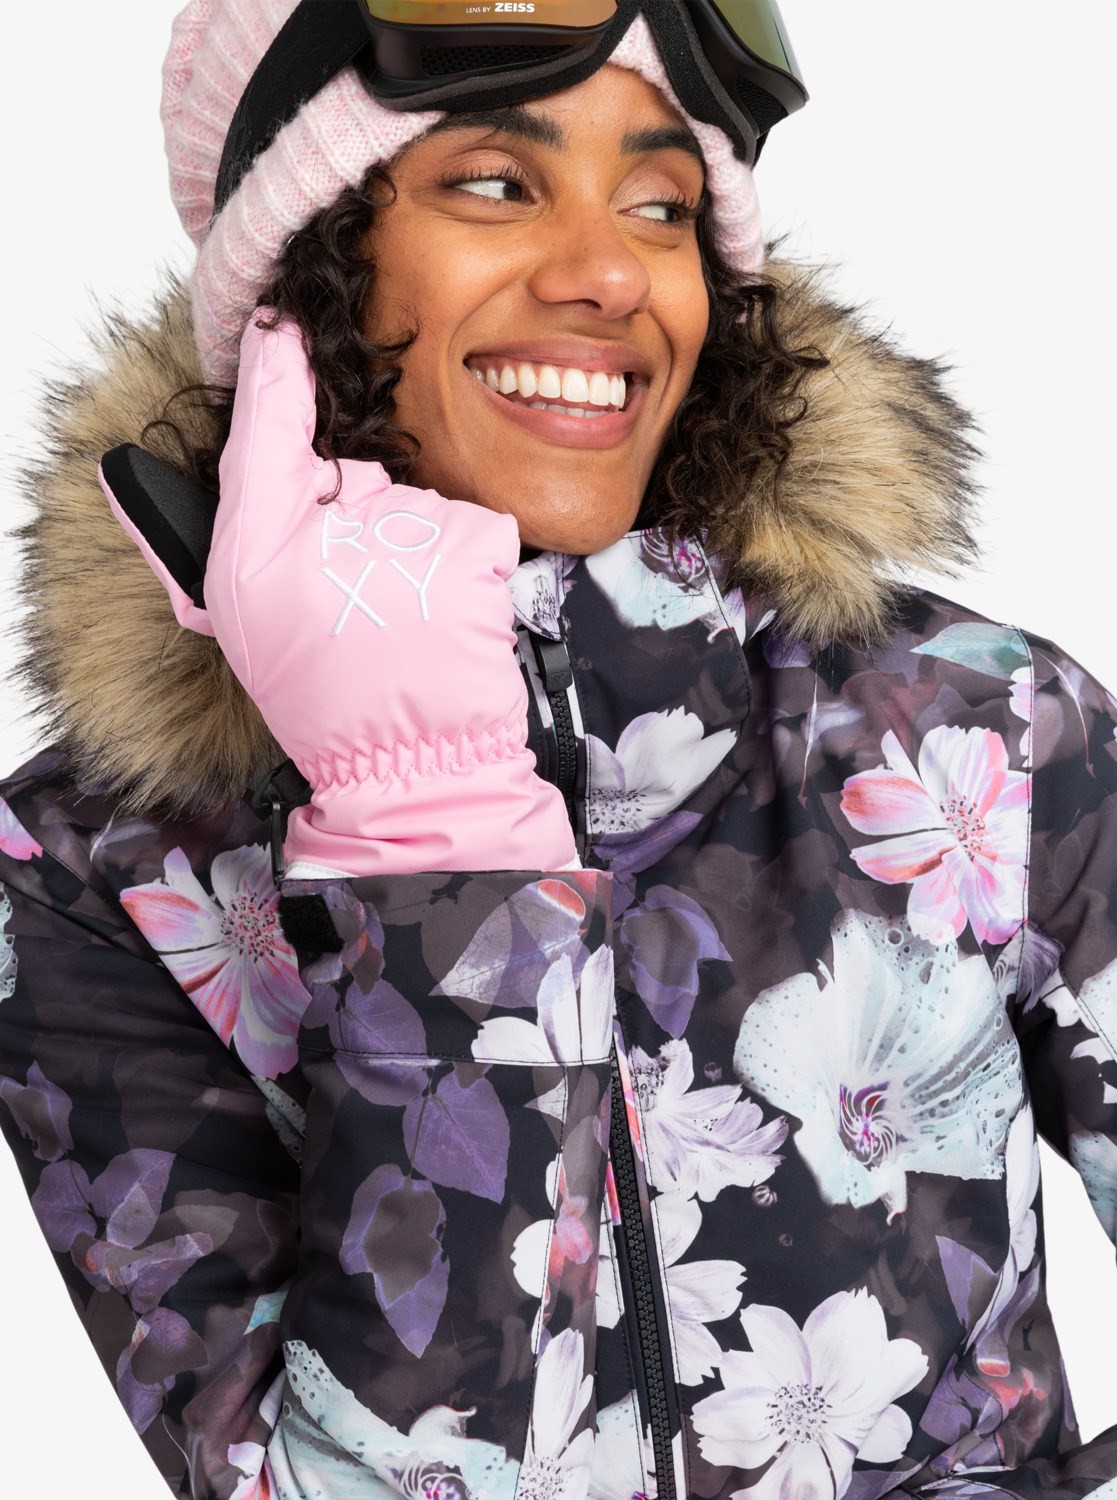  Roxy Kadın Freshfıeld Gloves Pınk Frostıng Eldiven Erjhn03239-mgs0